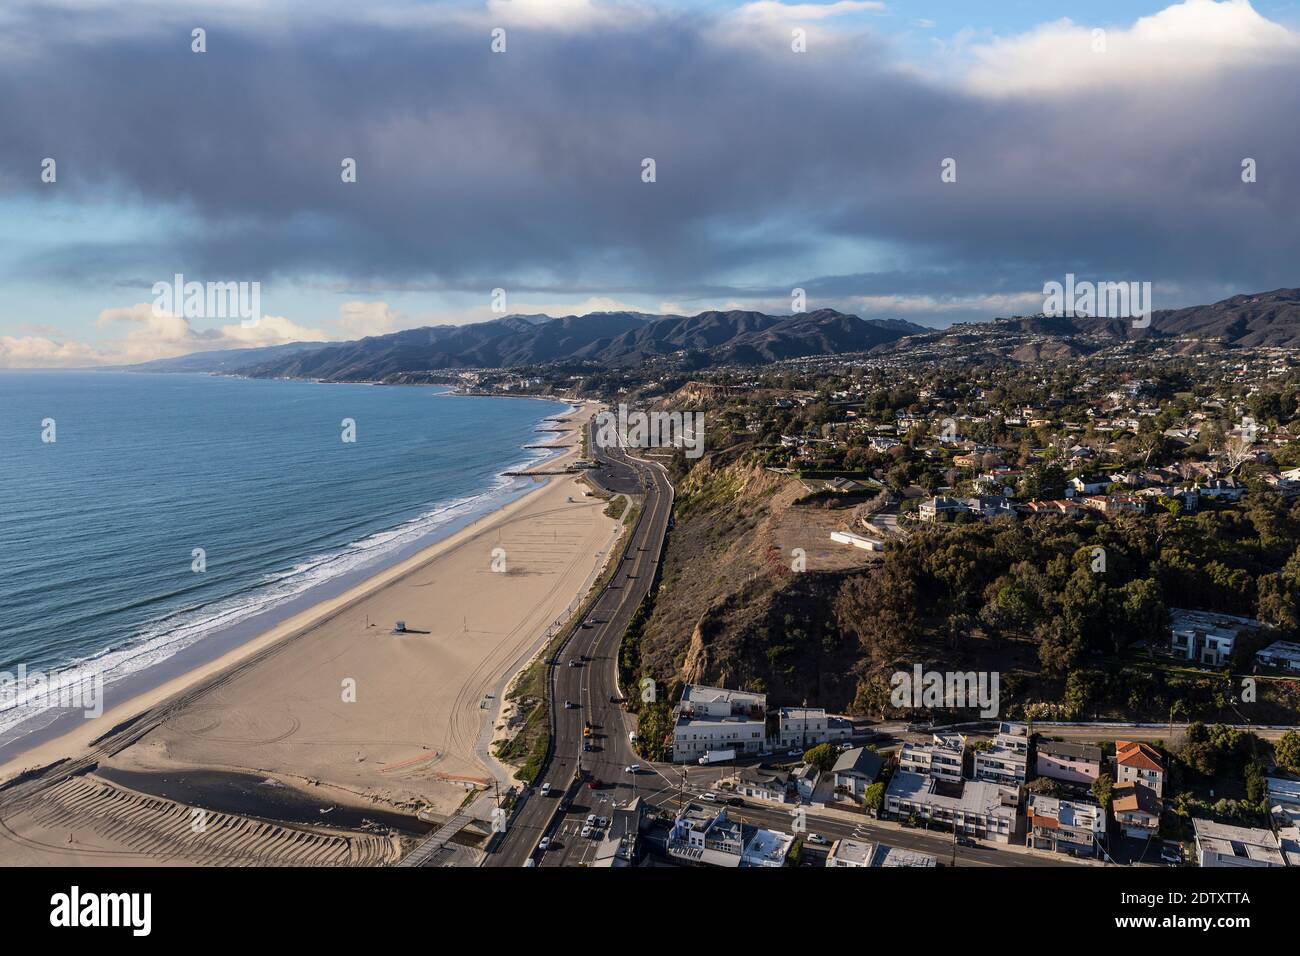 Vue aérienne des maisons, des plages, des montagnes avec ciel orageux dans la région des Palisades du Pacifique de Los Angeles en Californie. Banque D'Images